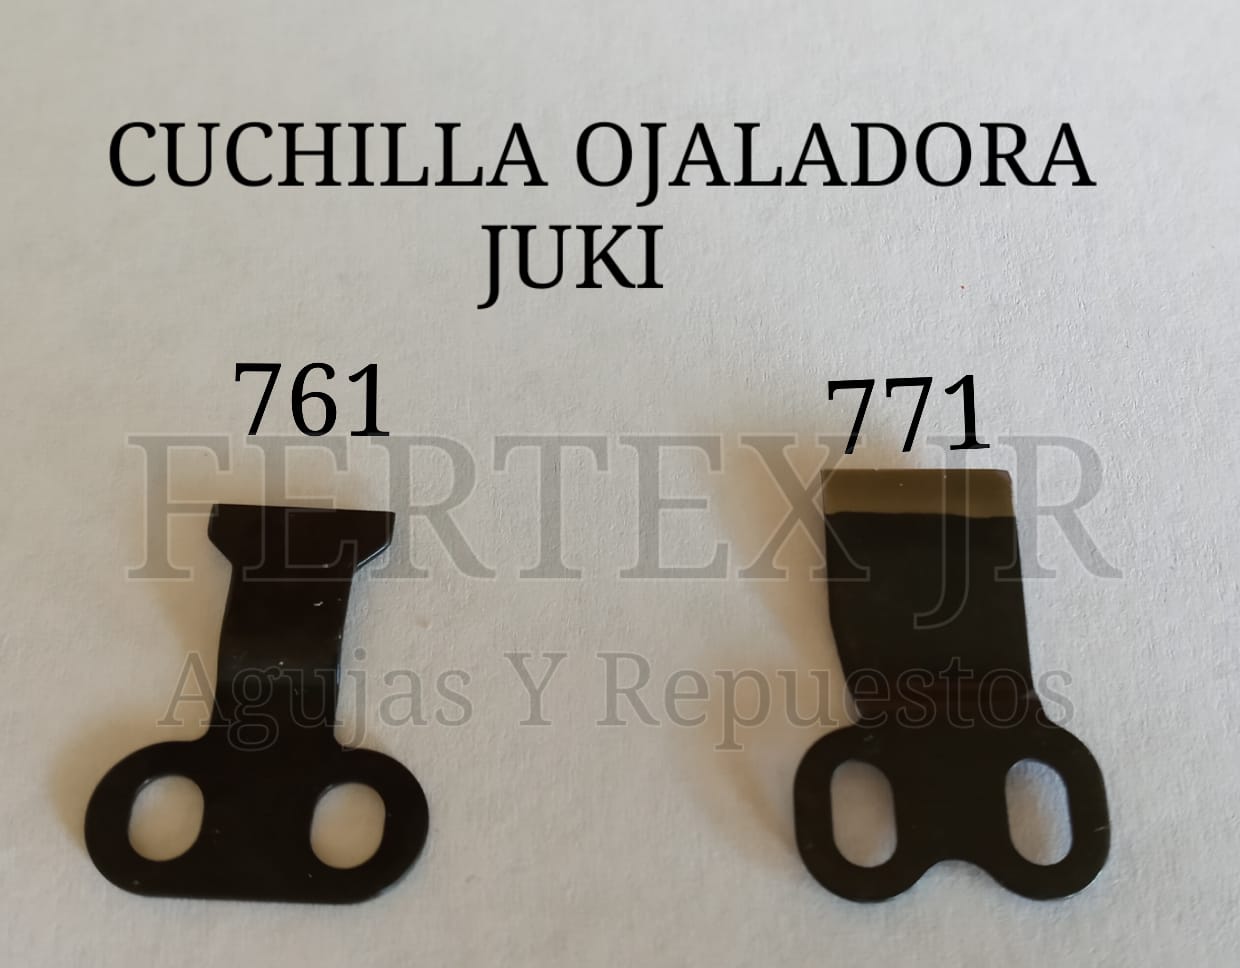 Cuchilla Ojaladora Juki 761 - 771